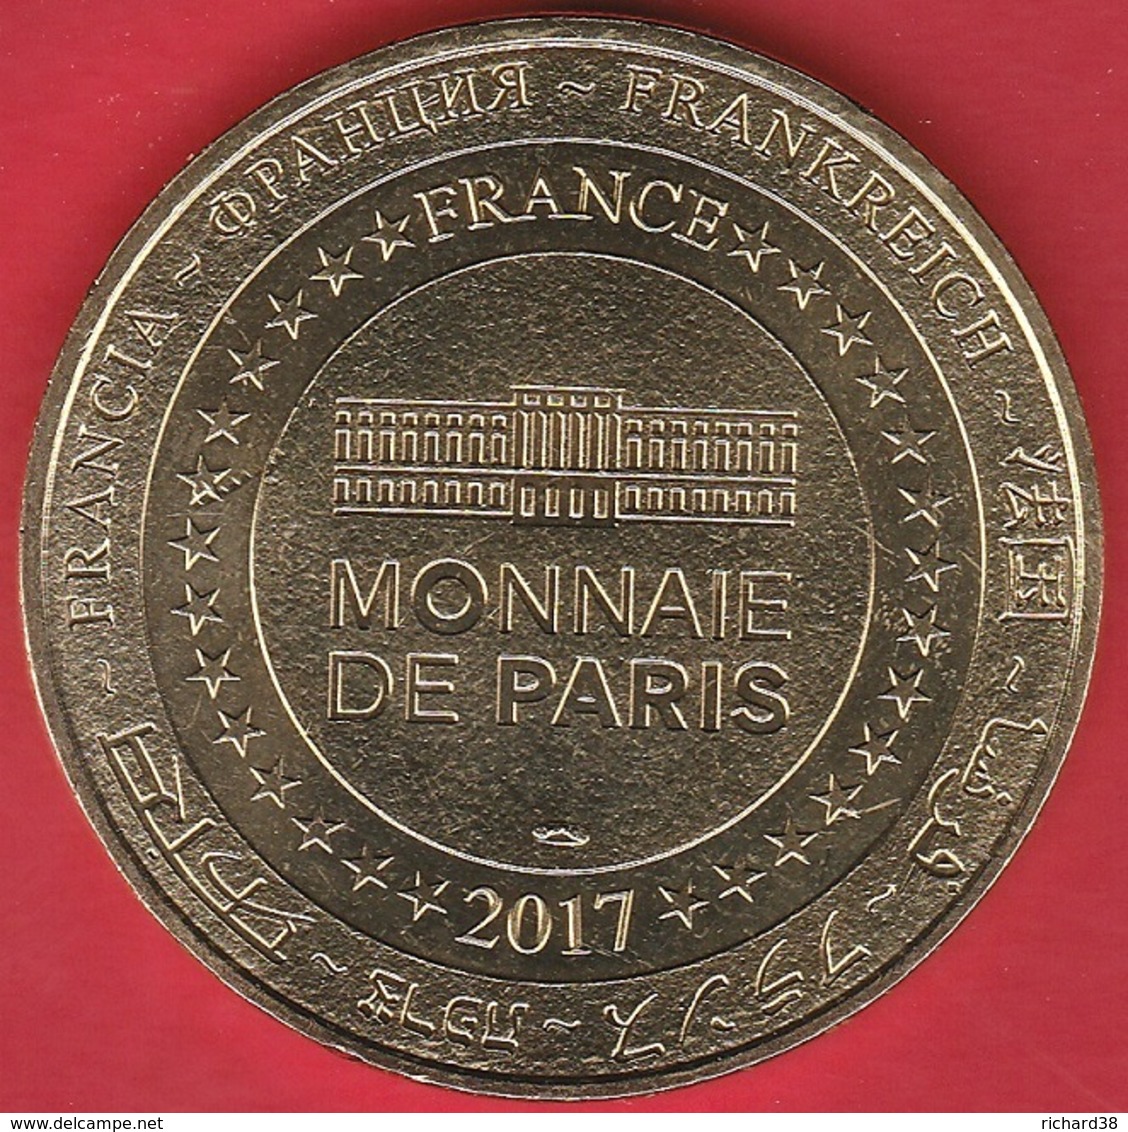 MONNAIE DE PARIS - 30 UZES - CATHEDRALE SAINT THEODORIIT - TOUR FENESTRELLE 2017 - 2017